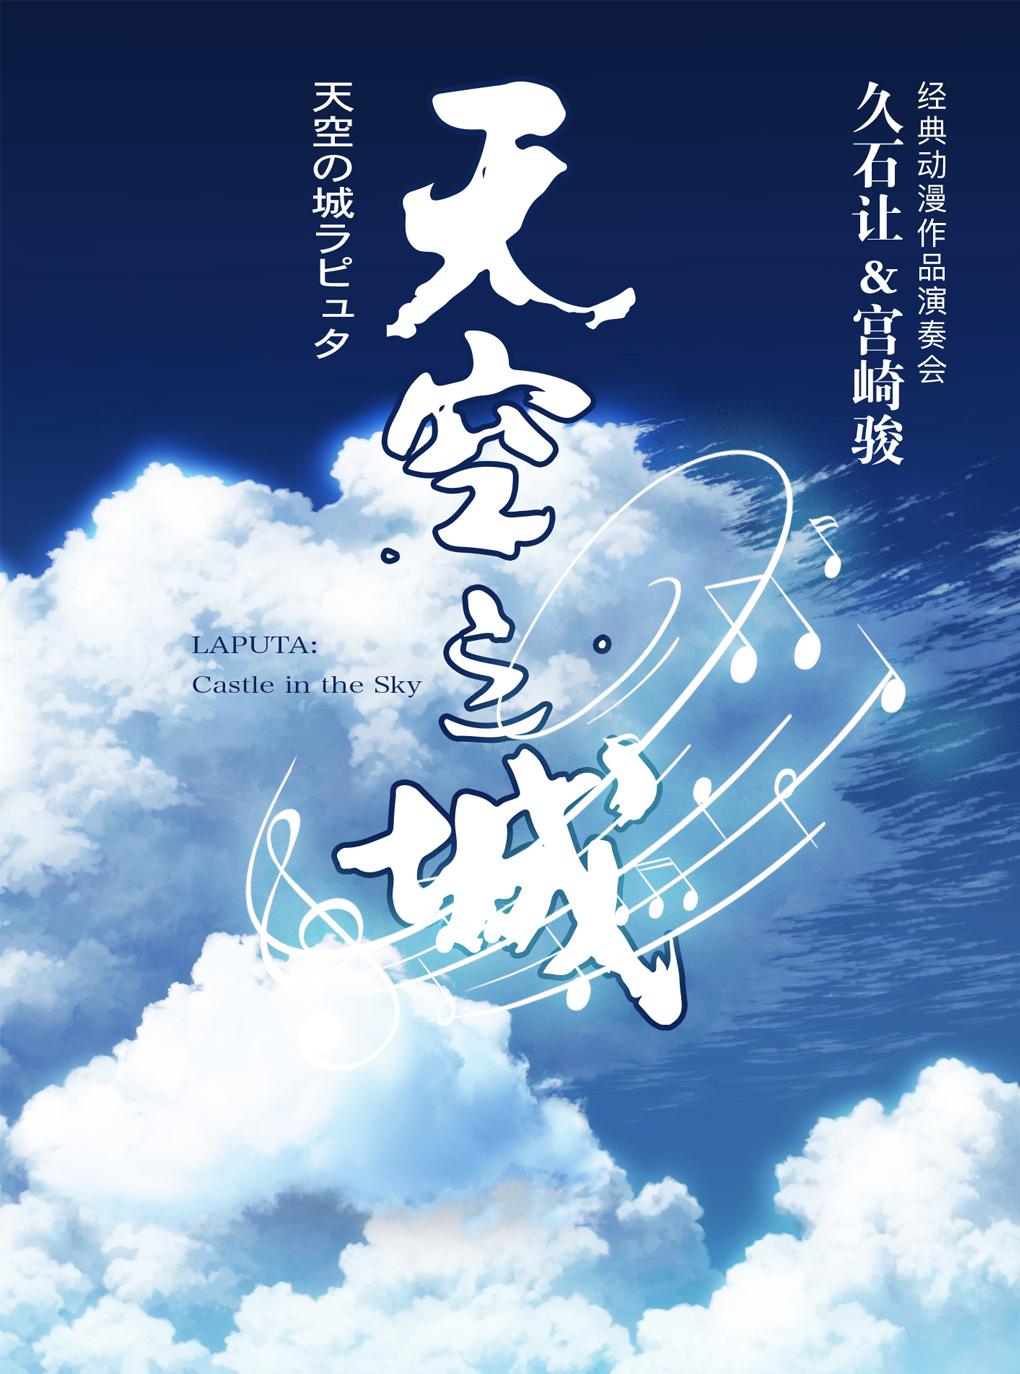 [南京] 南京《 天空之城 》久石让 宫崎骏演奏会 2021年06月20日 周日 19:30 180票面